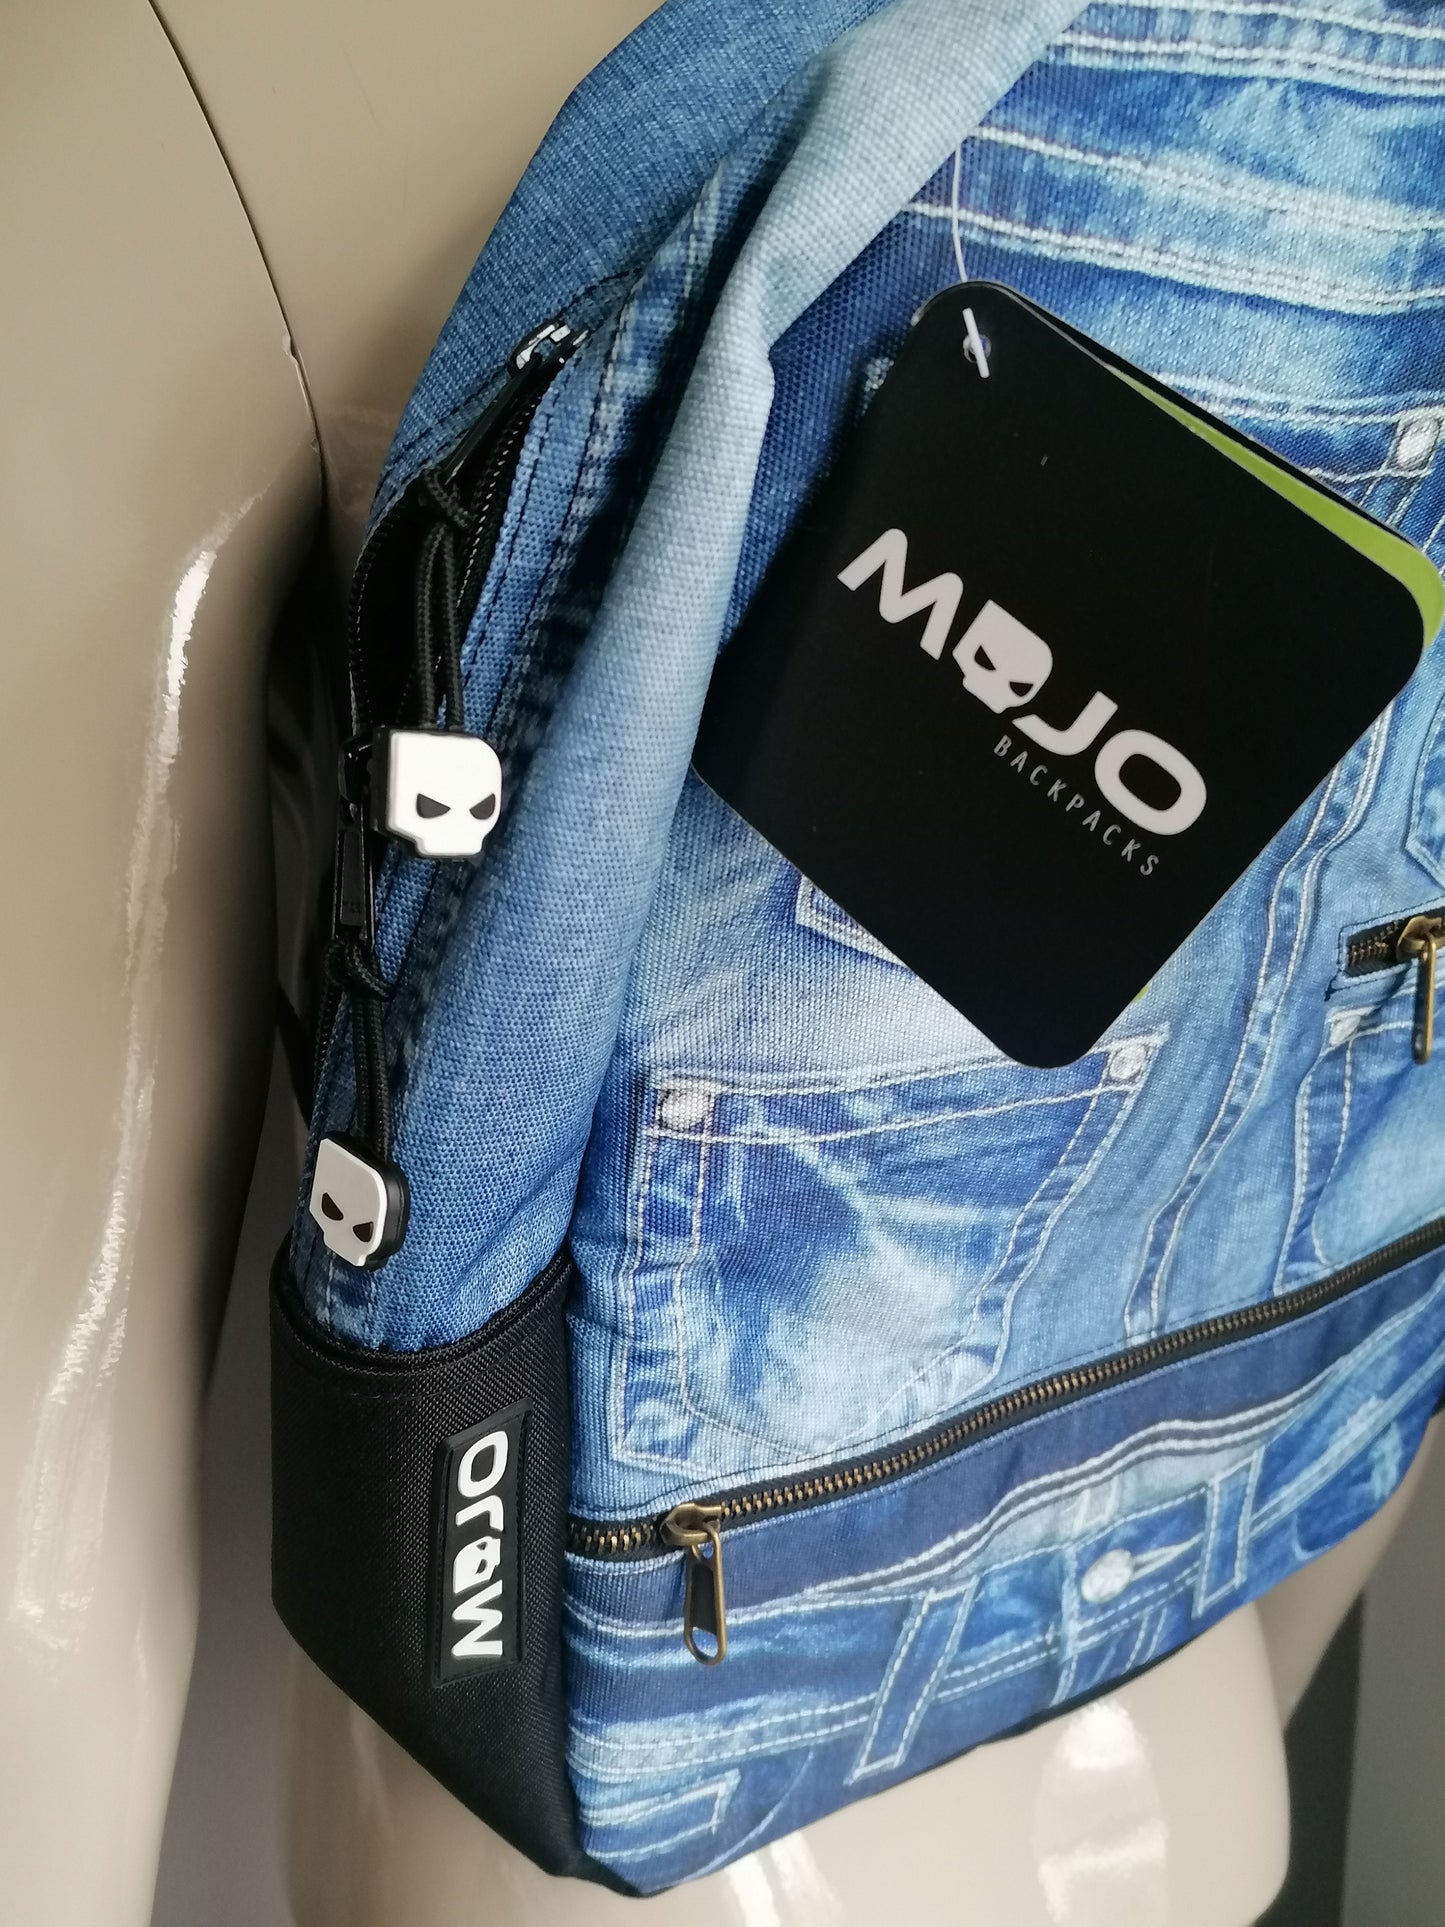 Mojo -Rucksäcke -Rucksack. Blue Jeans Look Print. Einige in der Tasche.